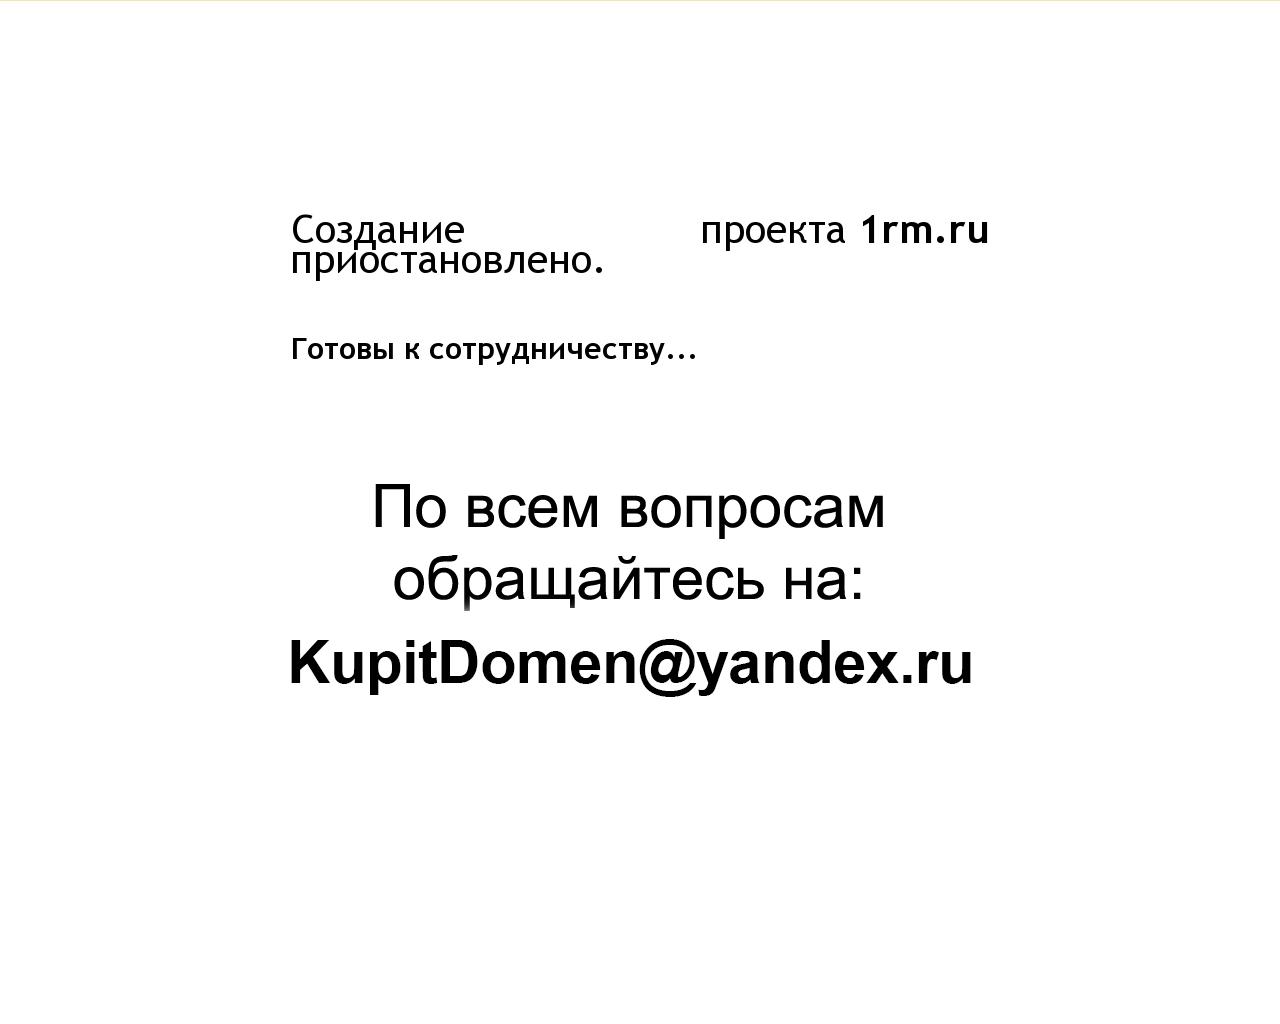 Изображение сайта 1rm.ru в разрешении 1280x1024